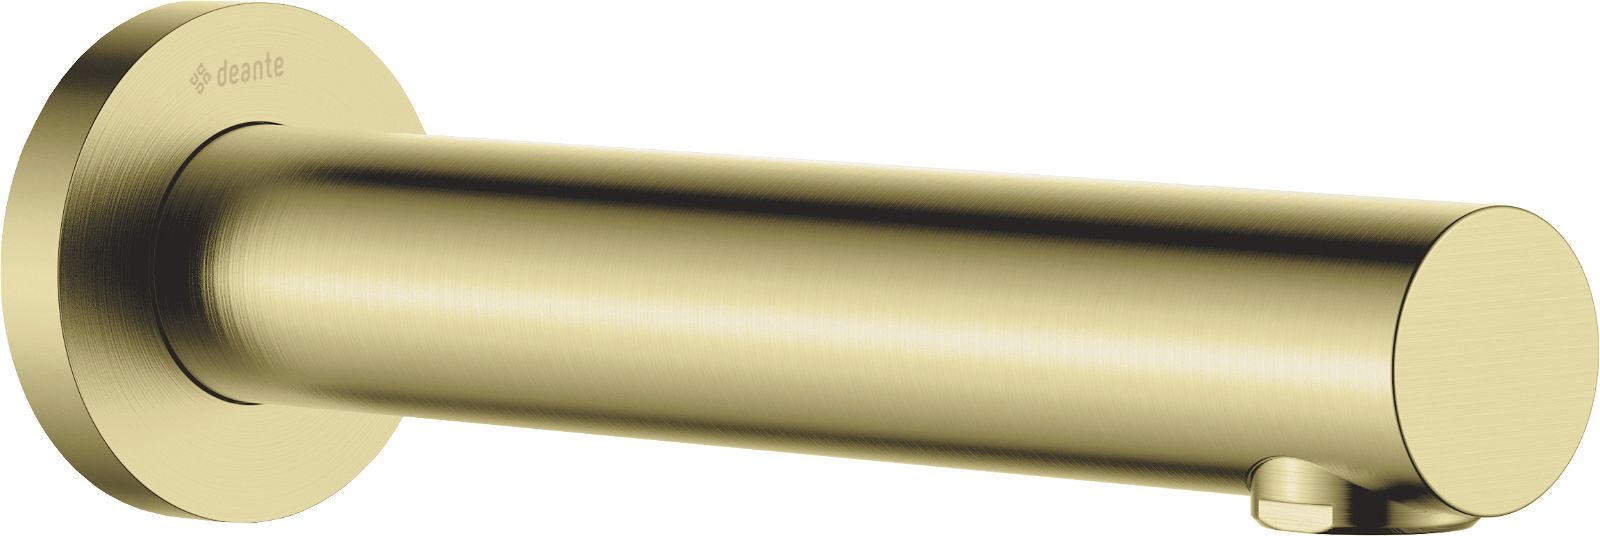 Bañera - 200 mm - NAC_R81K - Główne zdjęcie produktowe